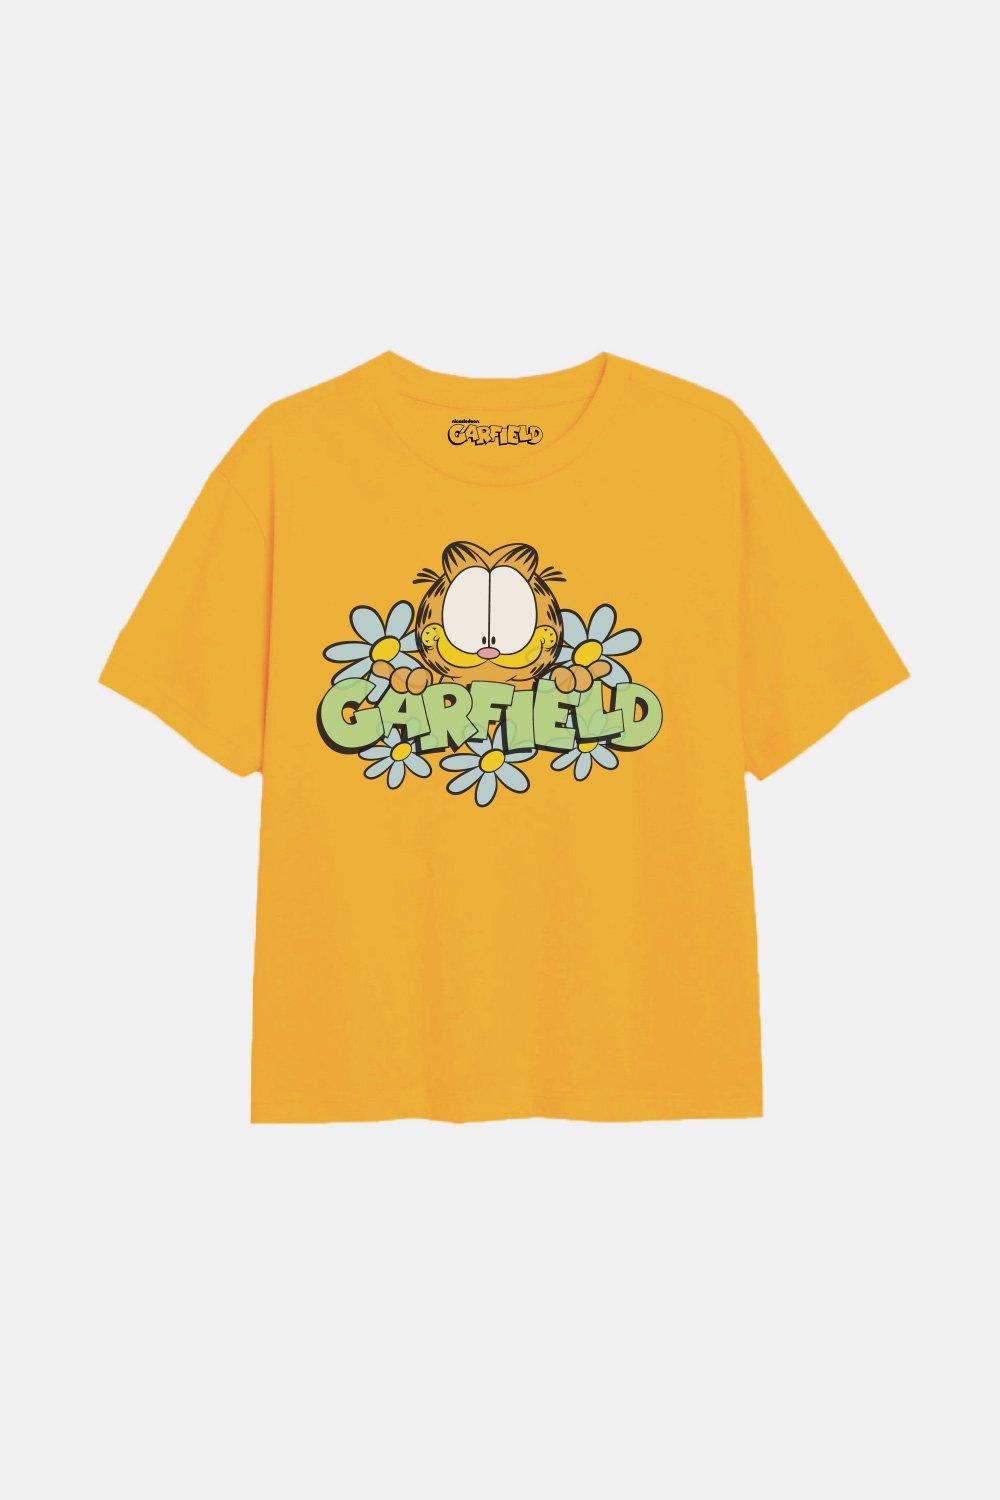 Футболка для девочек Flower Power Garfield, желтый гарфилд что может съесть гарфилд раскраска